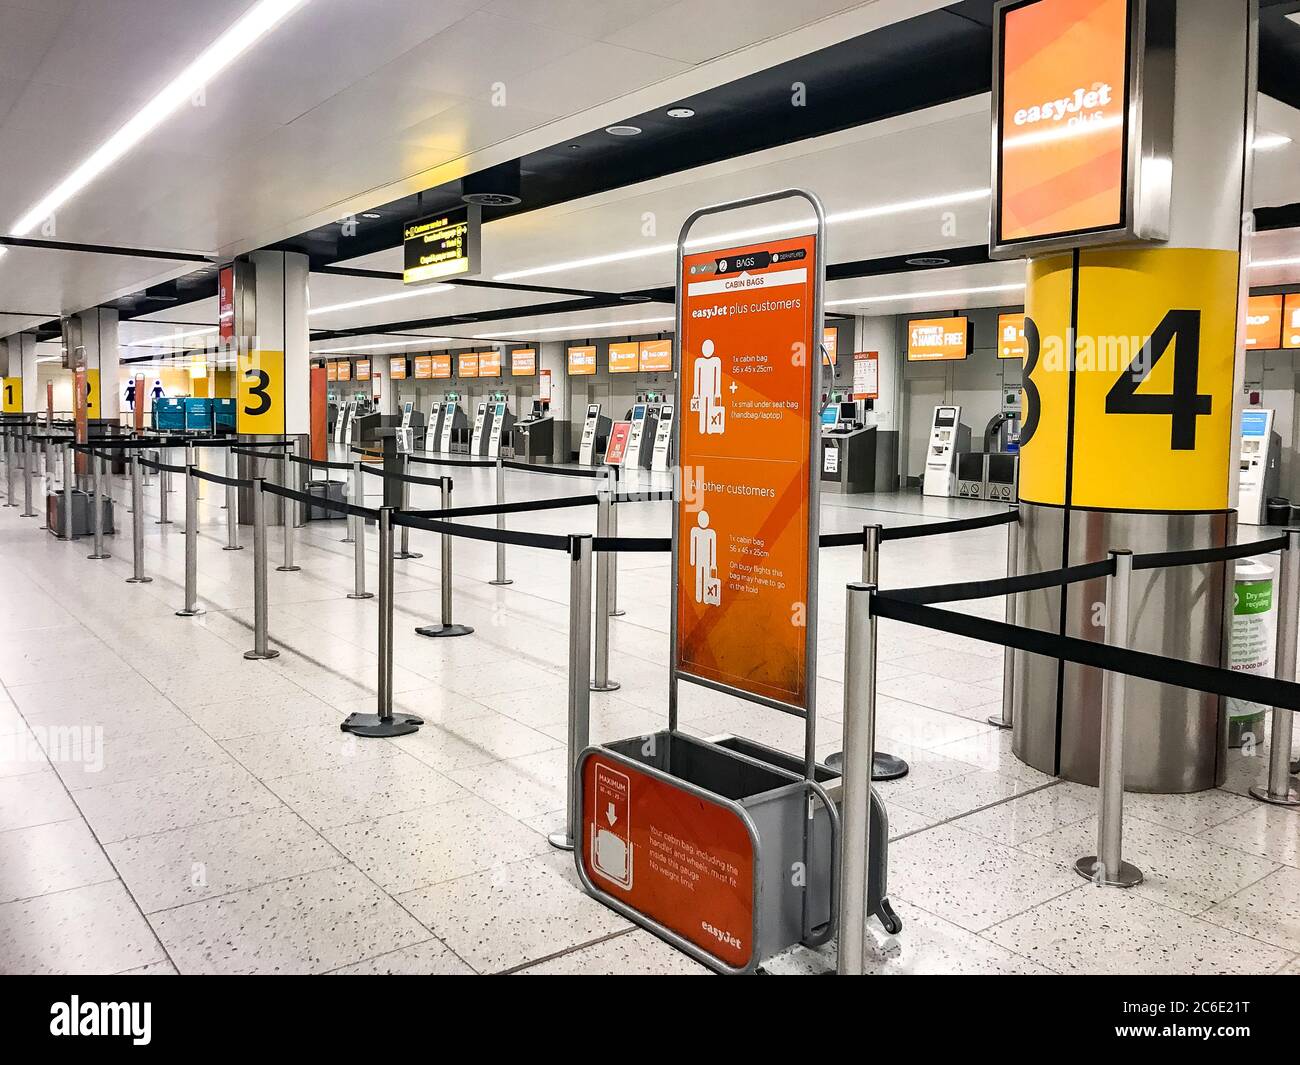 Flughafen London Gatwick, der ab dem 1. April sein Nordterminal schließen soll, ist verlassen und weiß nicht, wann er wieder geöffnet wird. EasyJet hat heute seine Flotte aufgrund der Covid-19 Coronavirus-Pandemie am 30. März 2020 in England gegründet Stockfoto